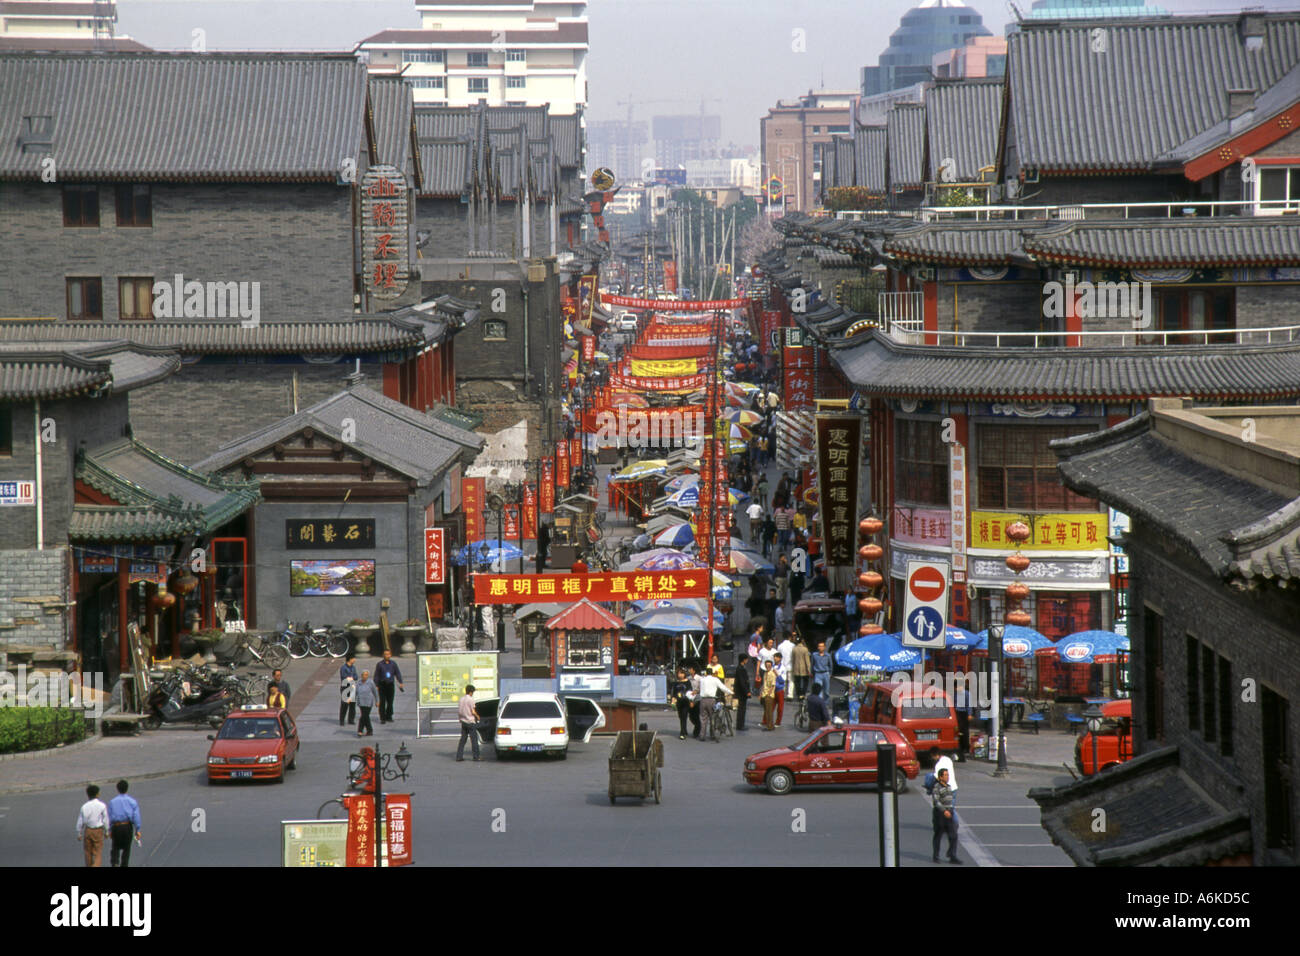 Rue de l'ancienne culture Guwenhua Jie Tianjin Chine Asie du Sud-Est asiatique chinois Banque D'Images